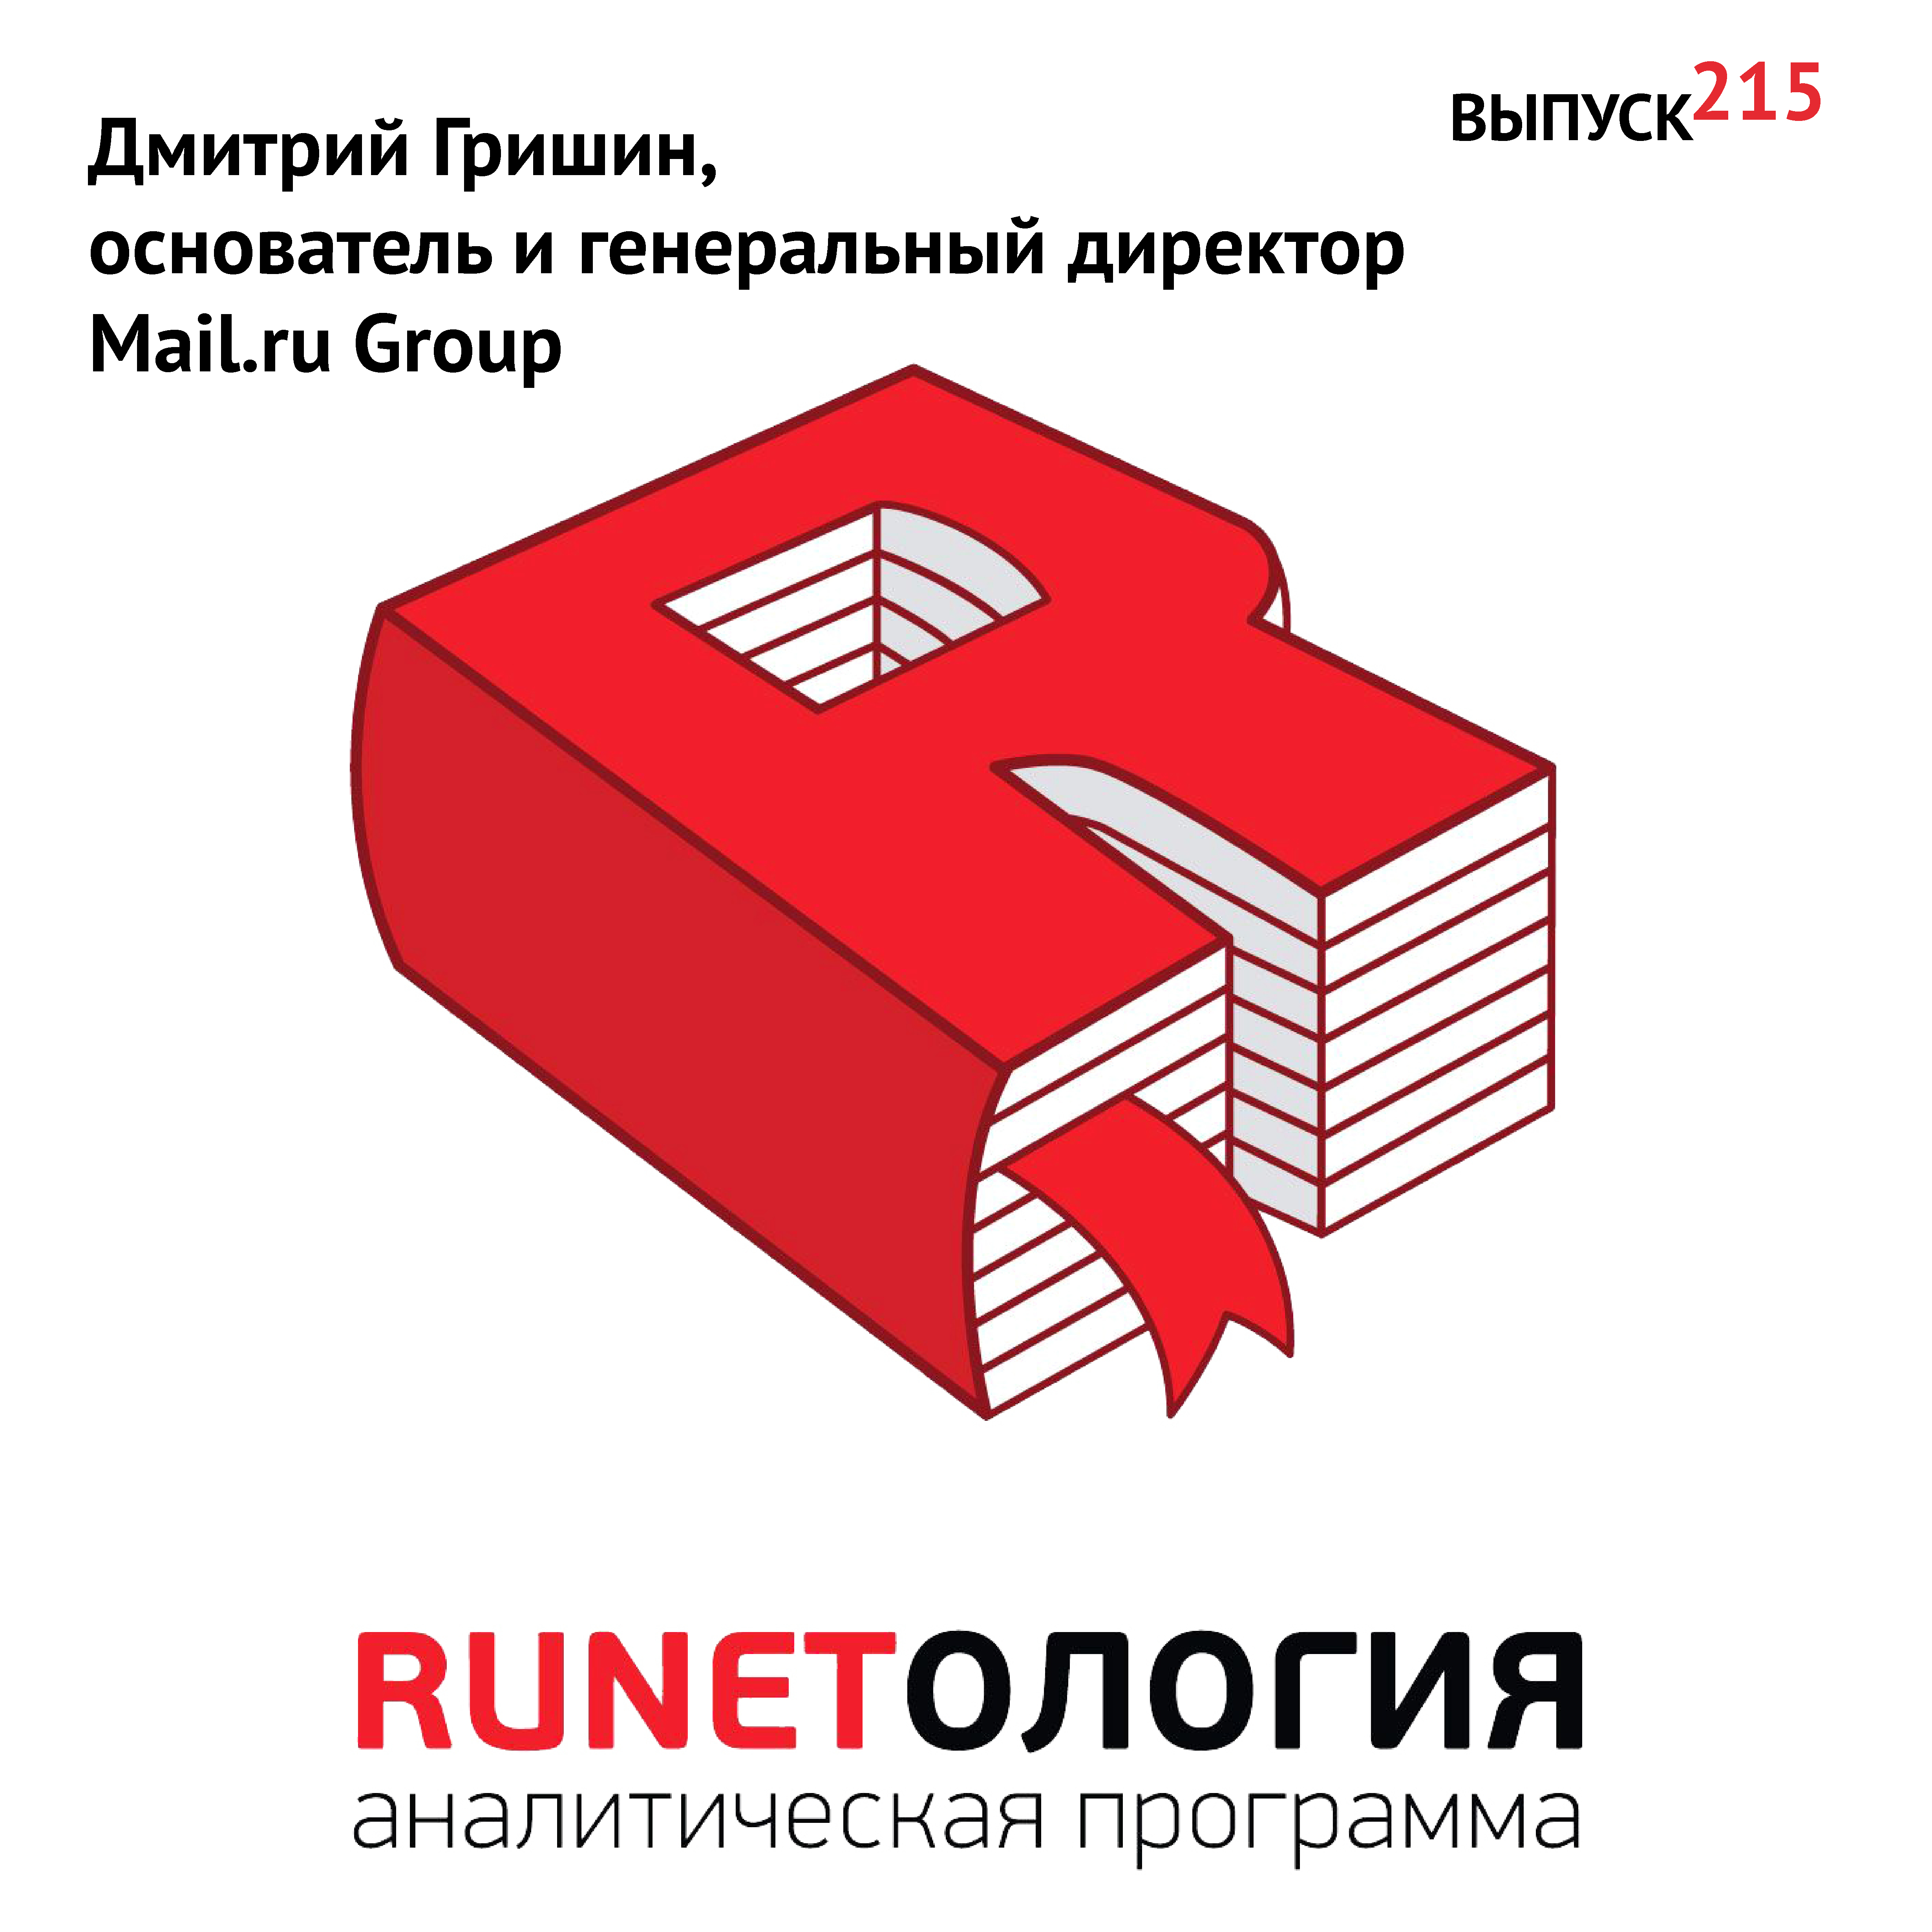 Дмитрий Гришин, основатель и генеральный директор Mail.ru Group